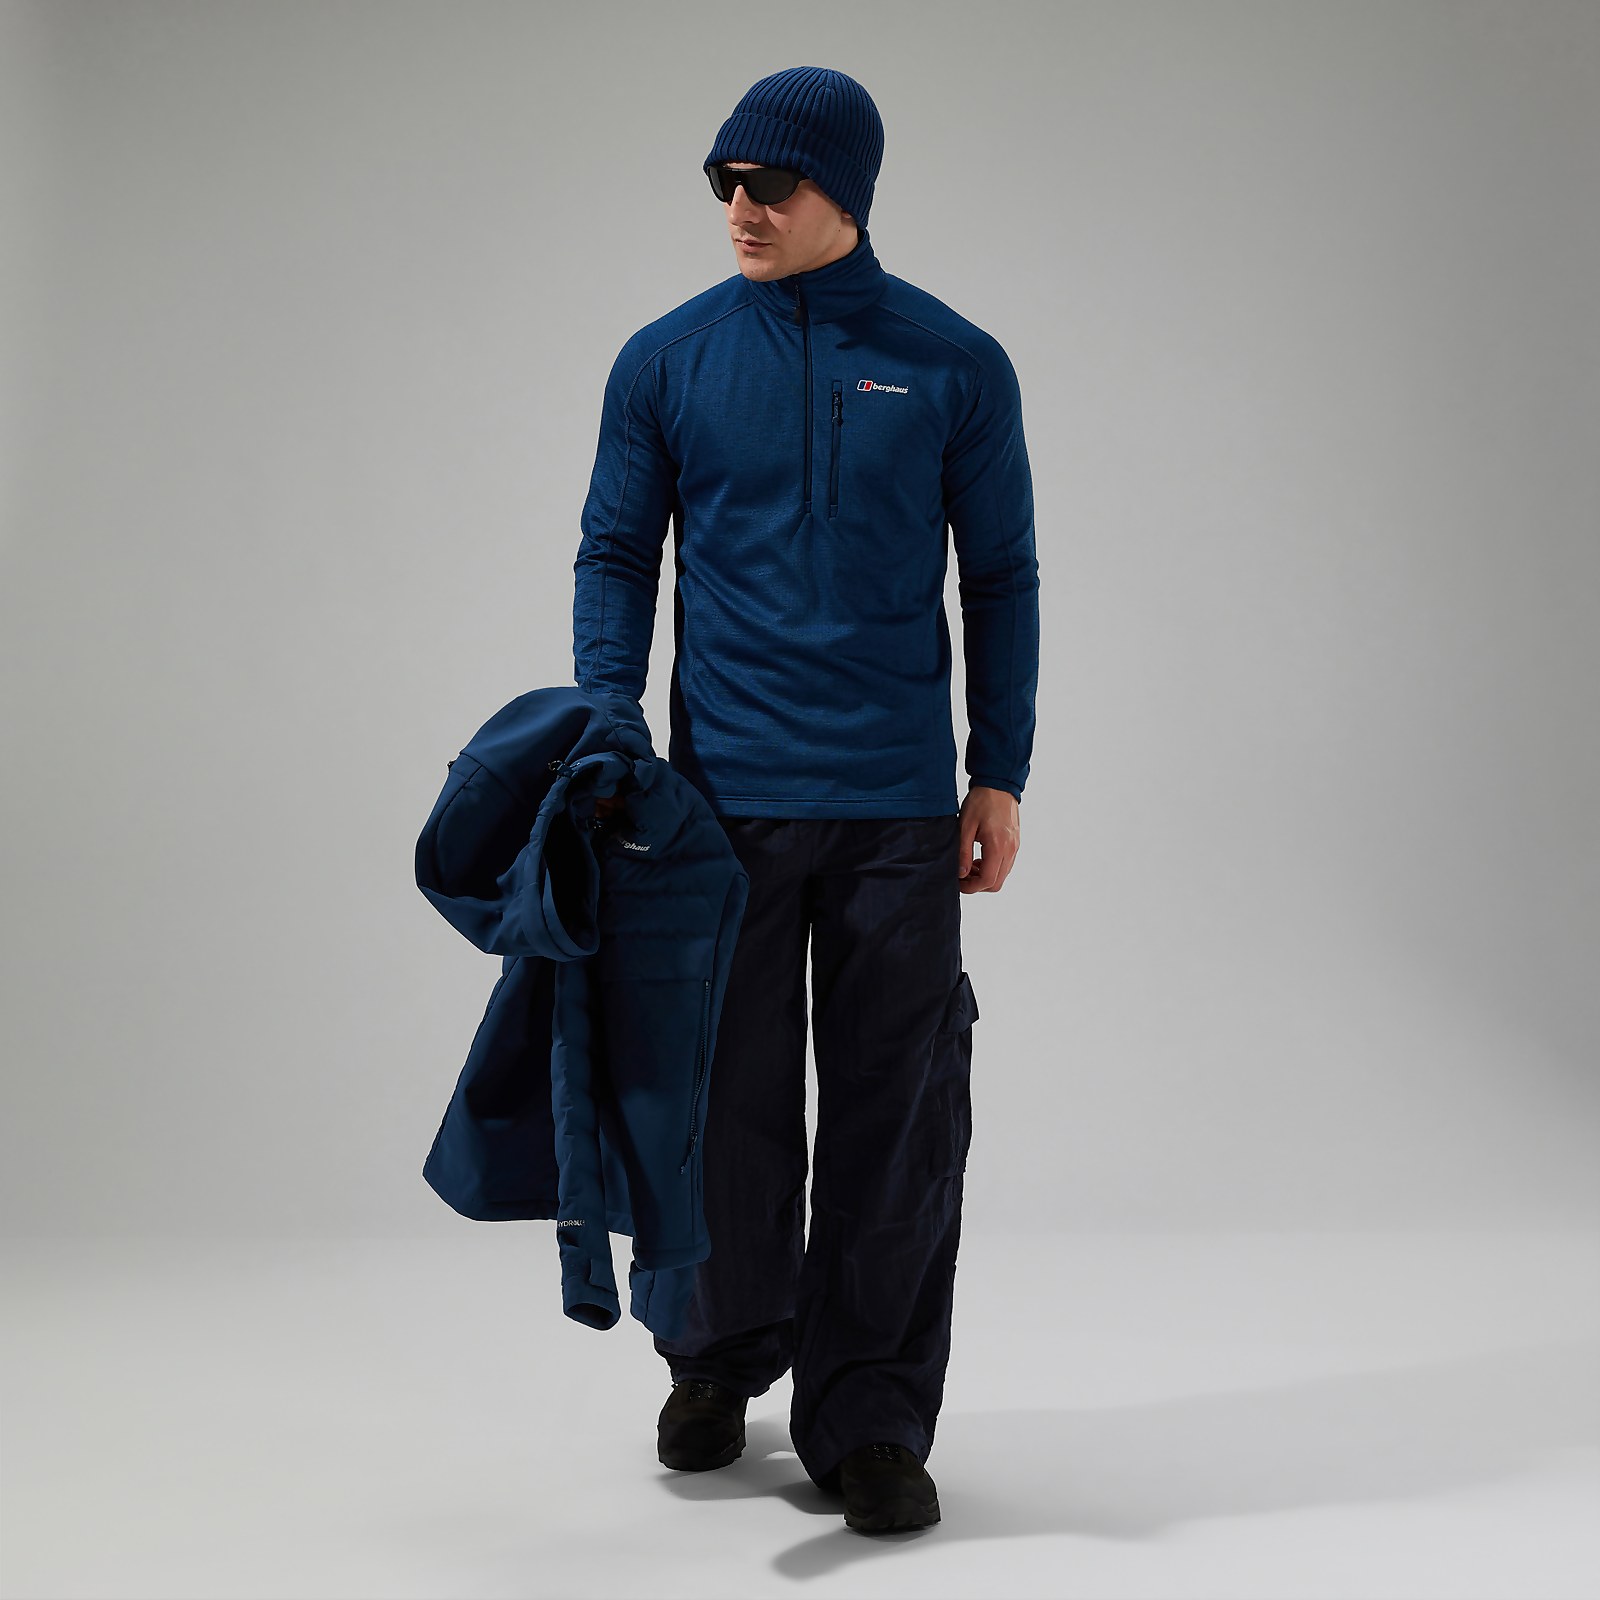 Men’s URB Spitzer Half Zip Fleece - Turquoise/Blue